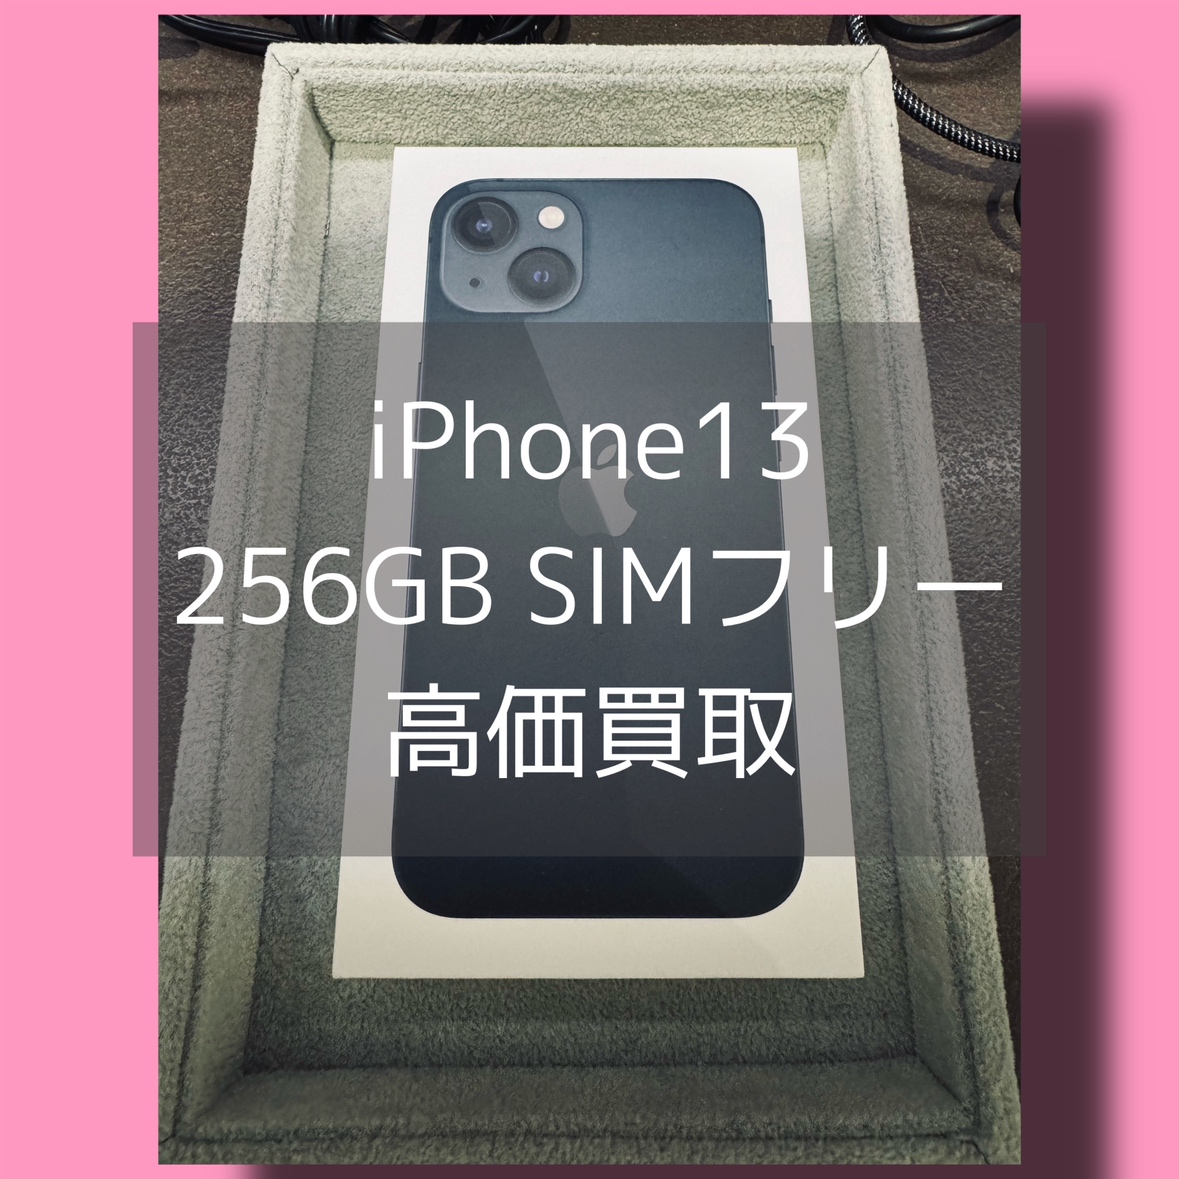 iPhone13 256GB SIMフリー 新品未開封品【渋谷店】